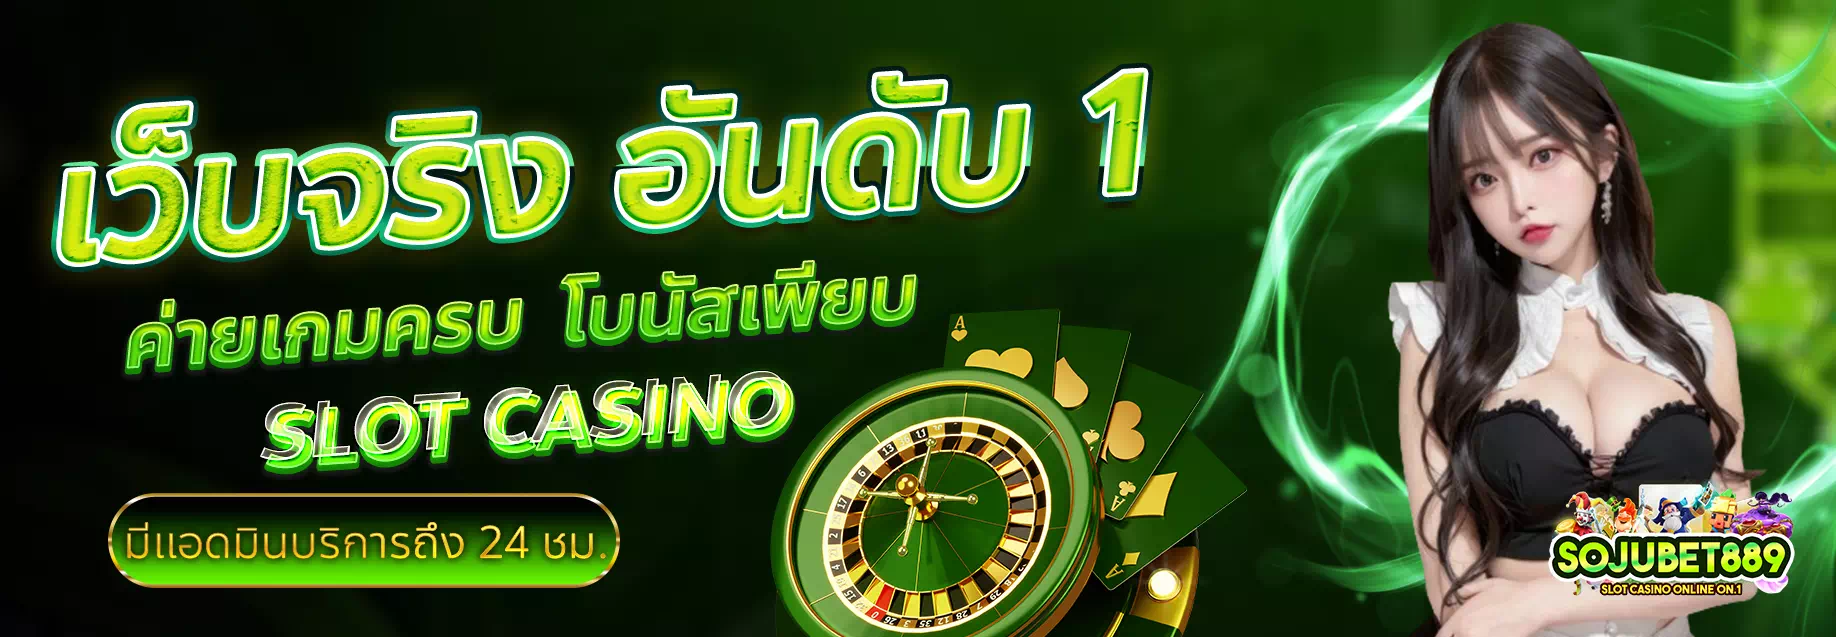 sojubet88 casino